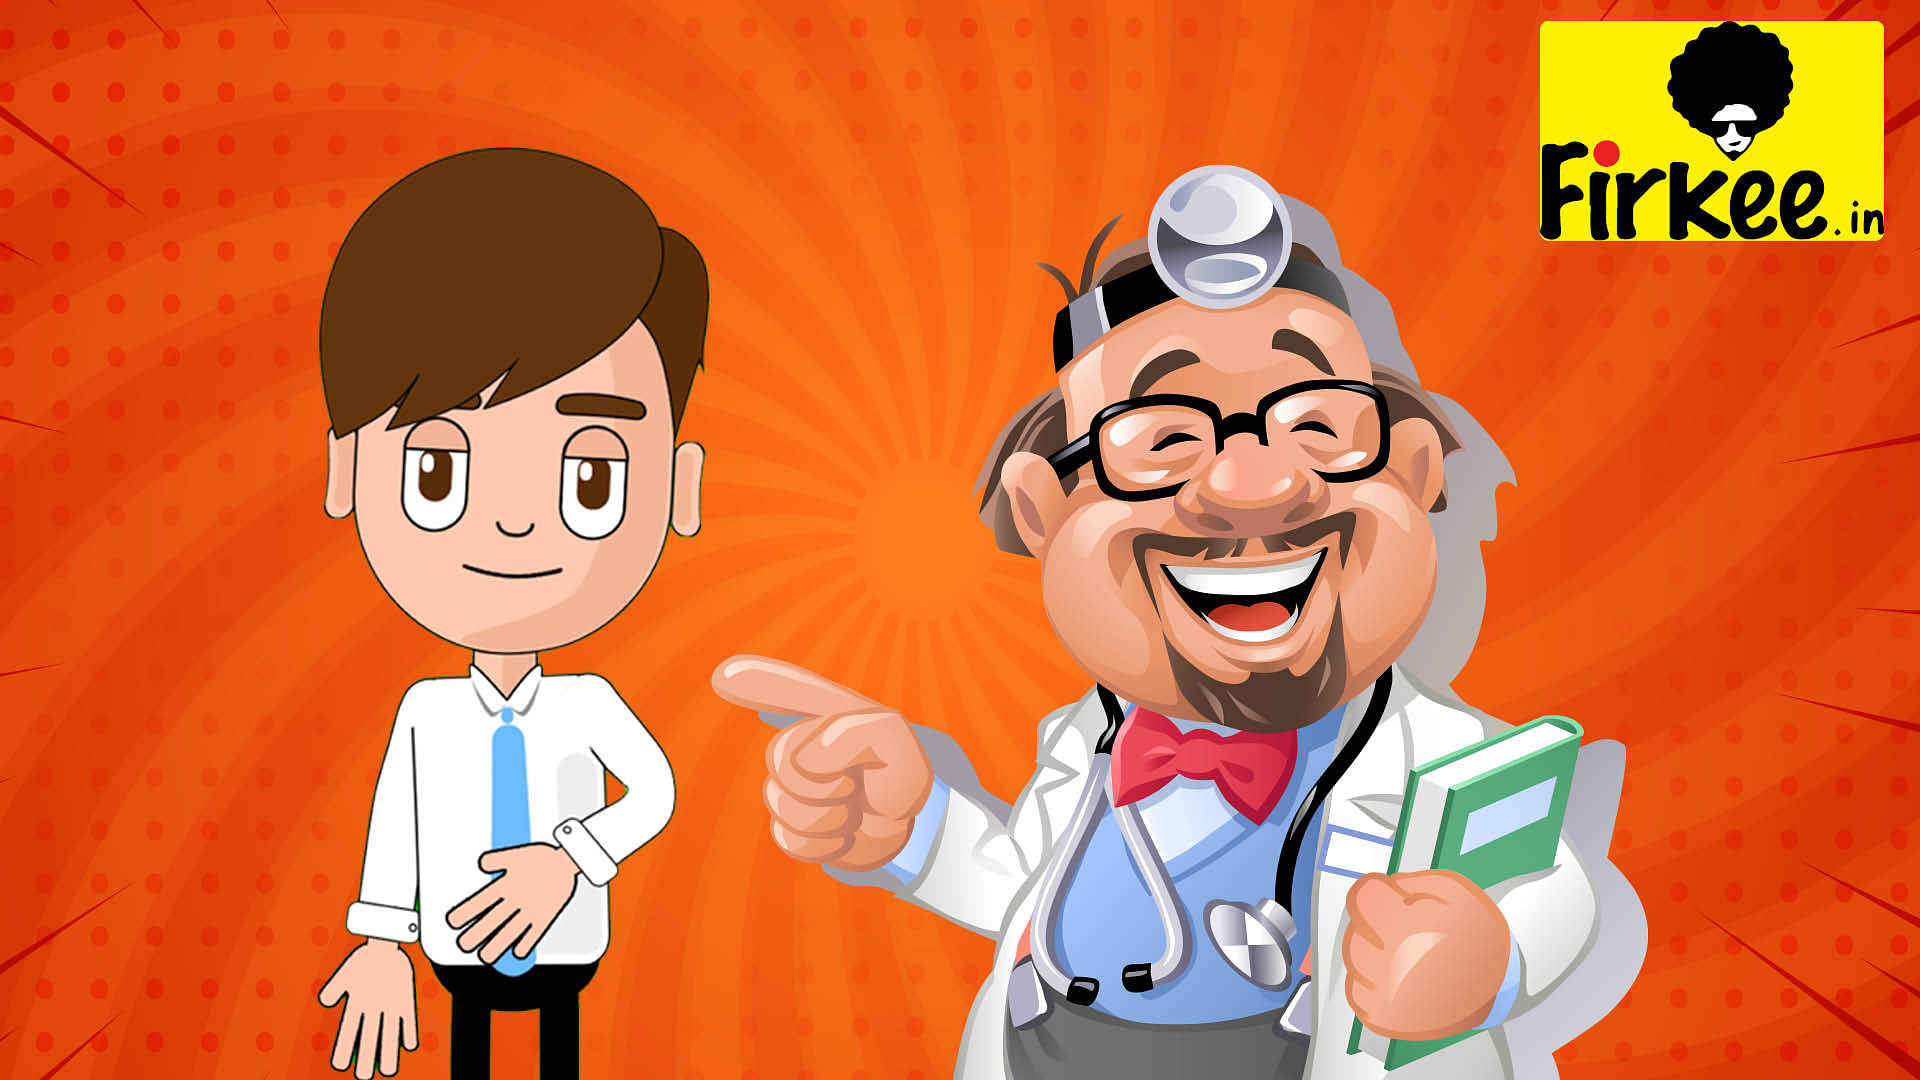 Doctor patient funny jokes viral on social media